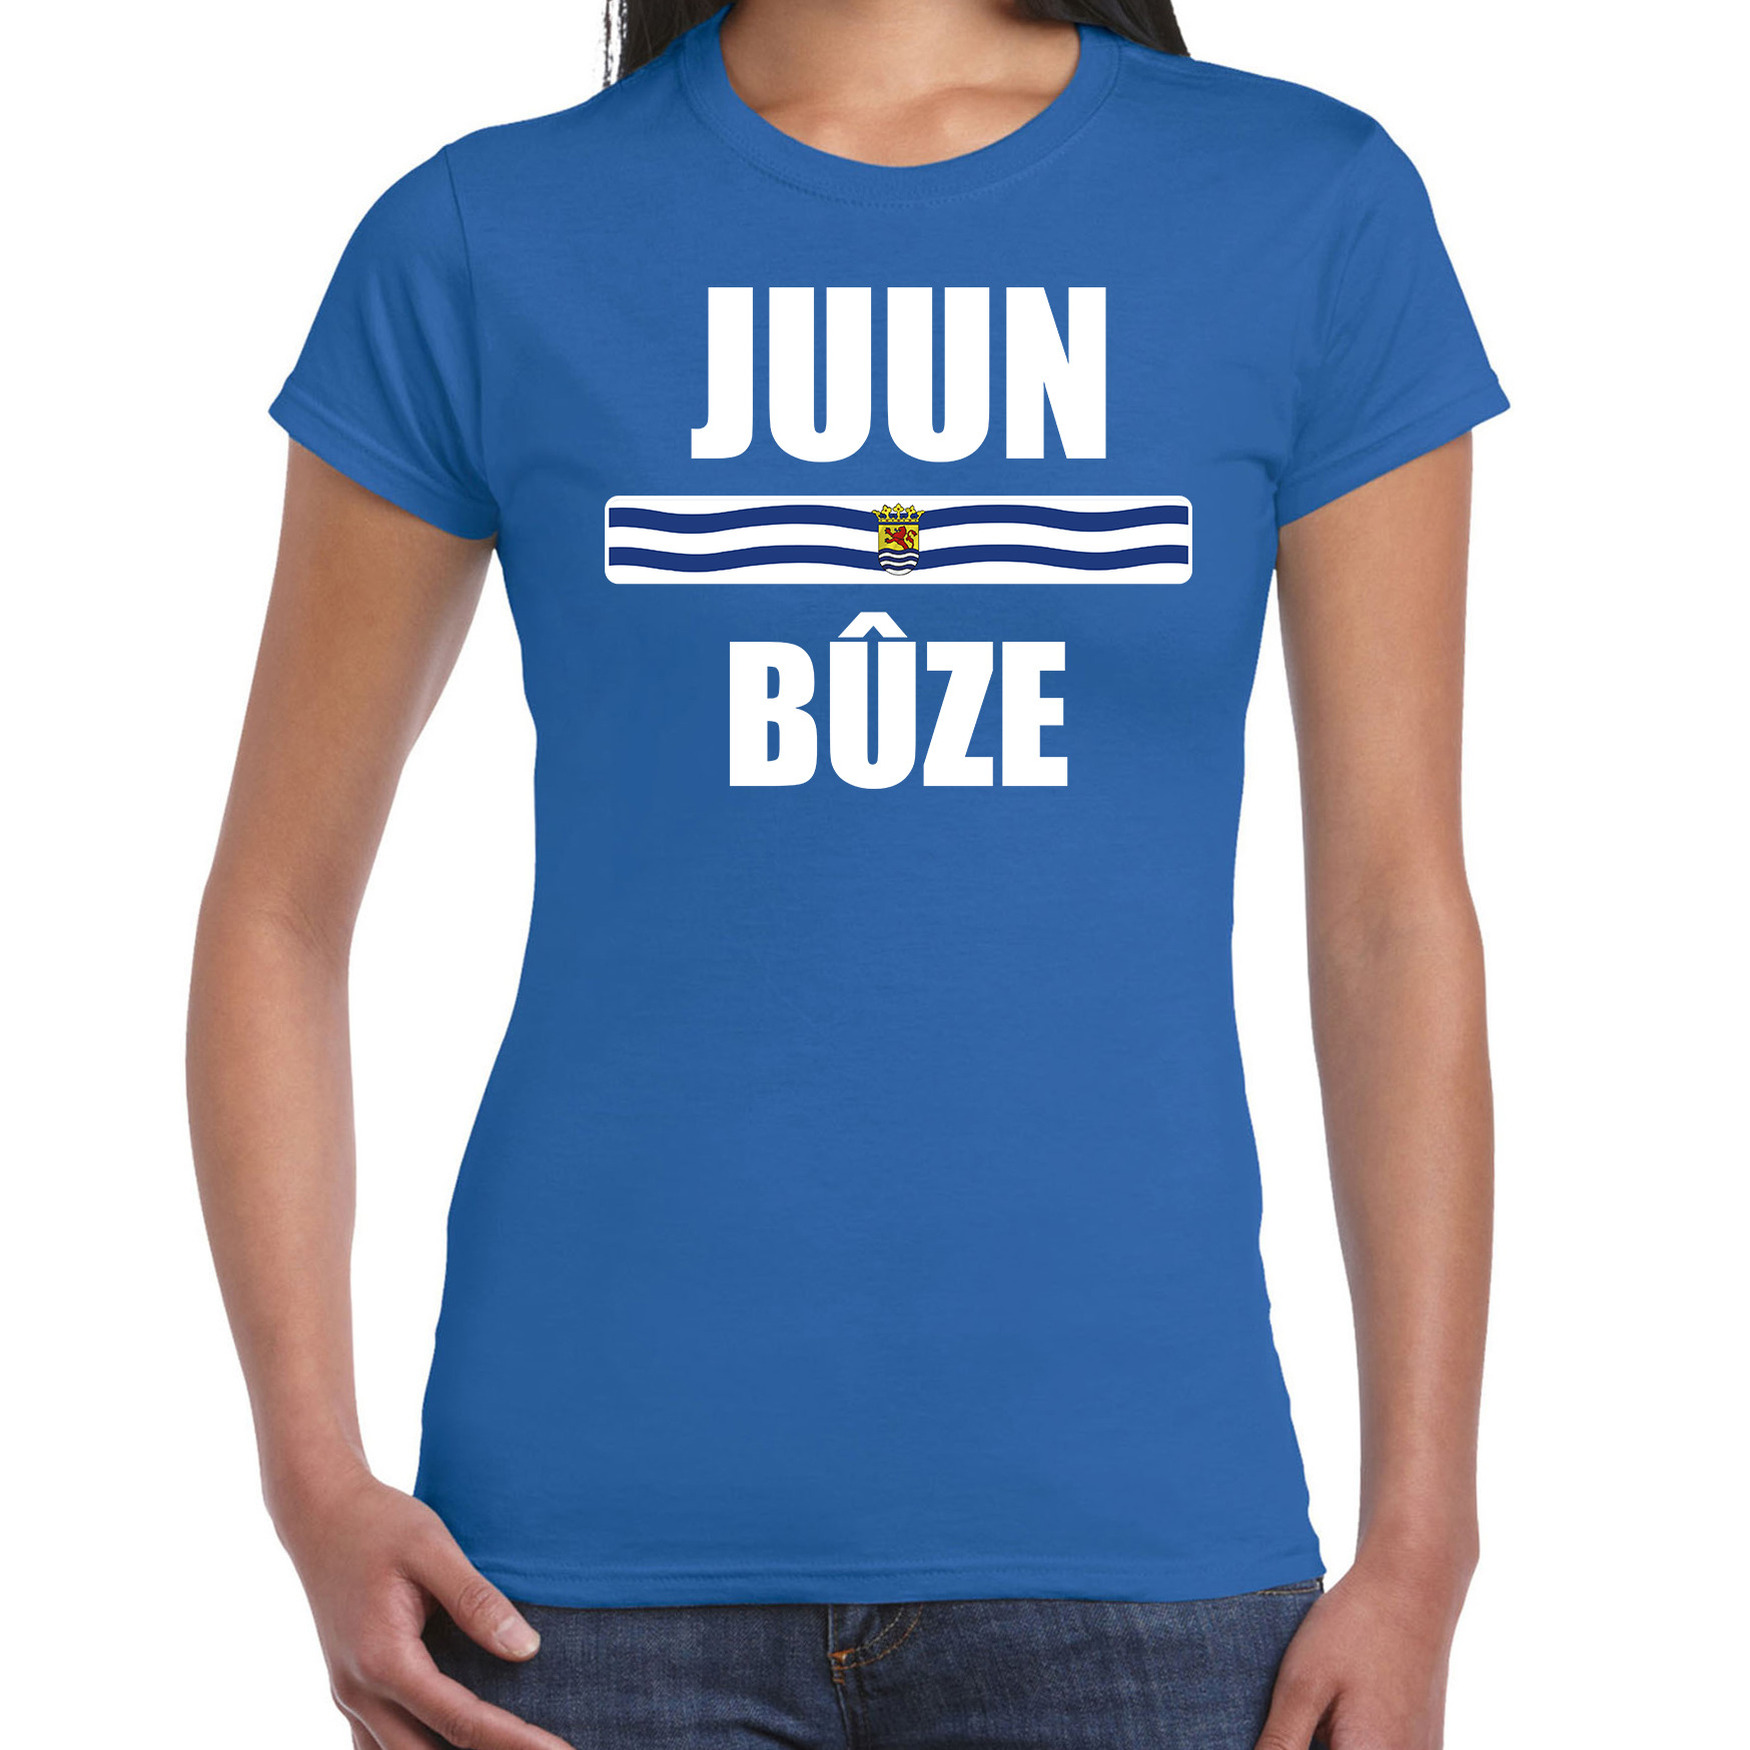 Juun buze met vlag Zeeland t-shirts Zeeuws dialect blauw voor dames